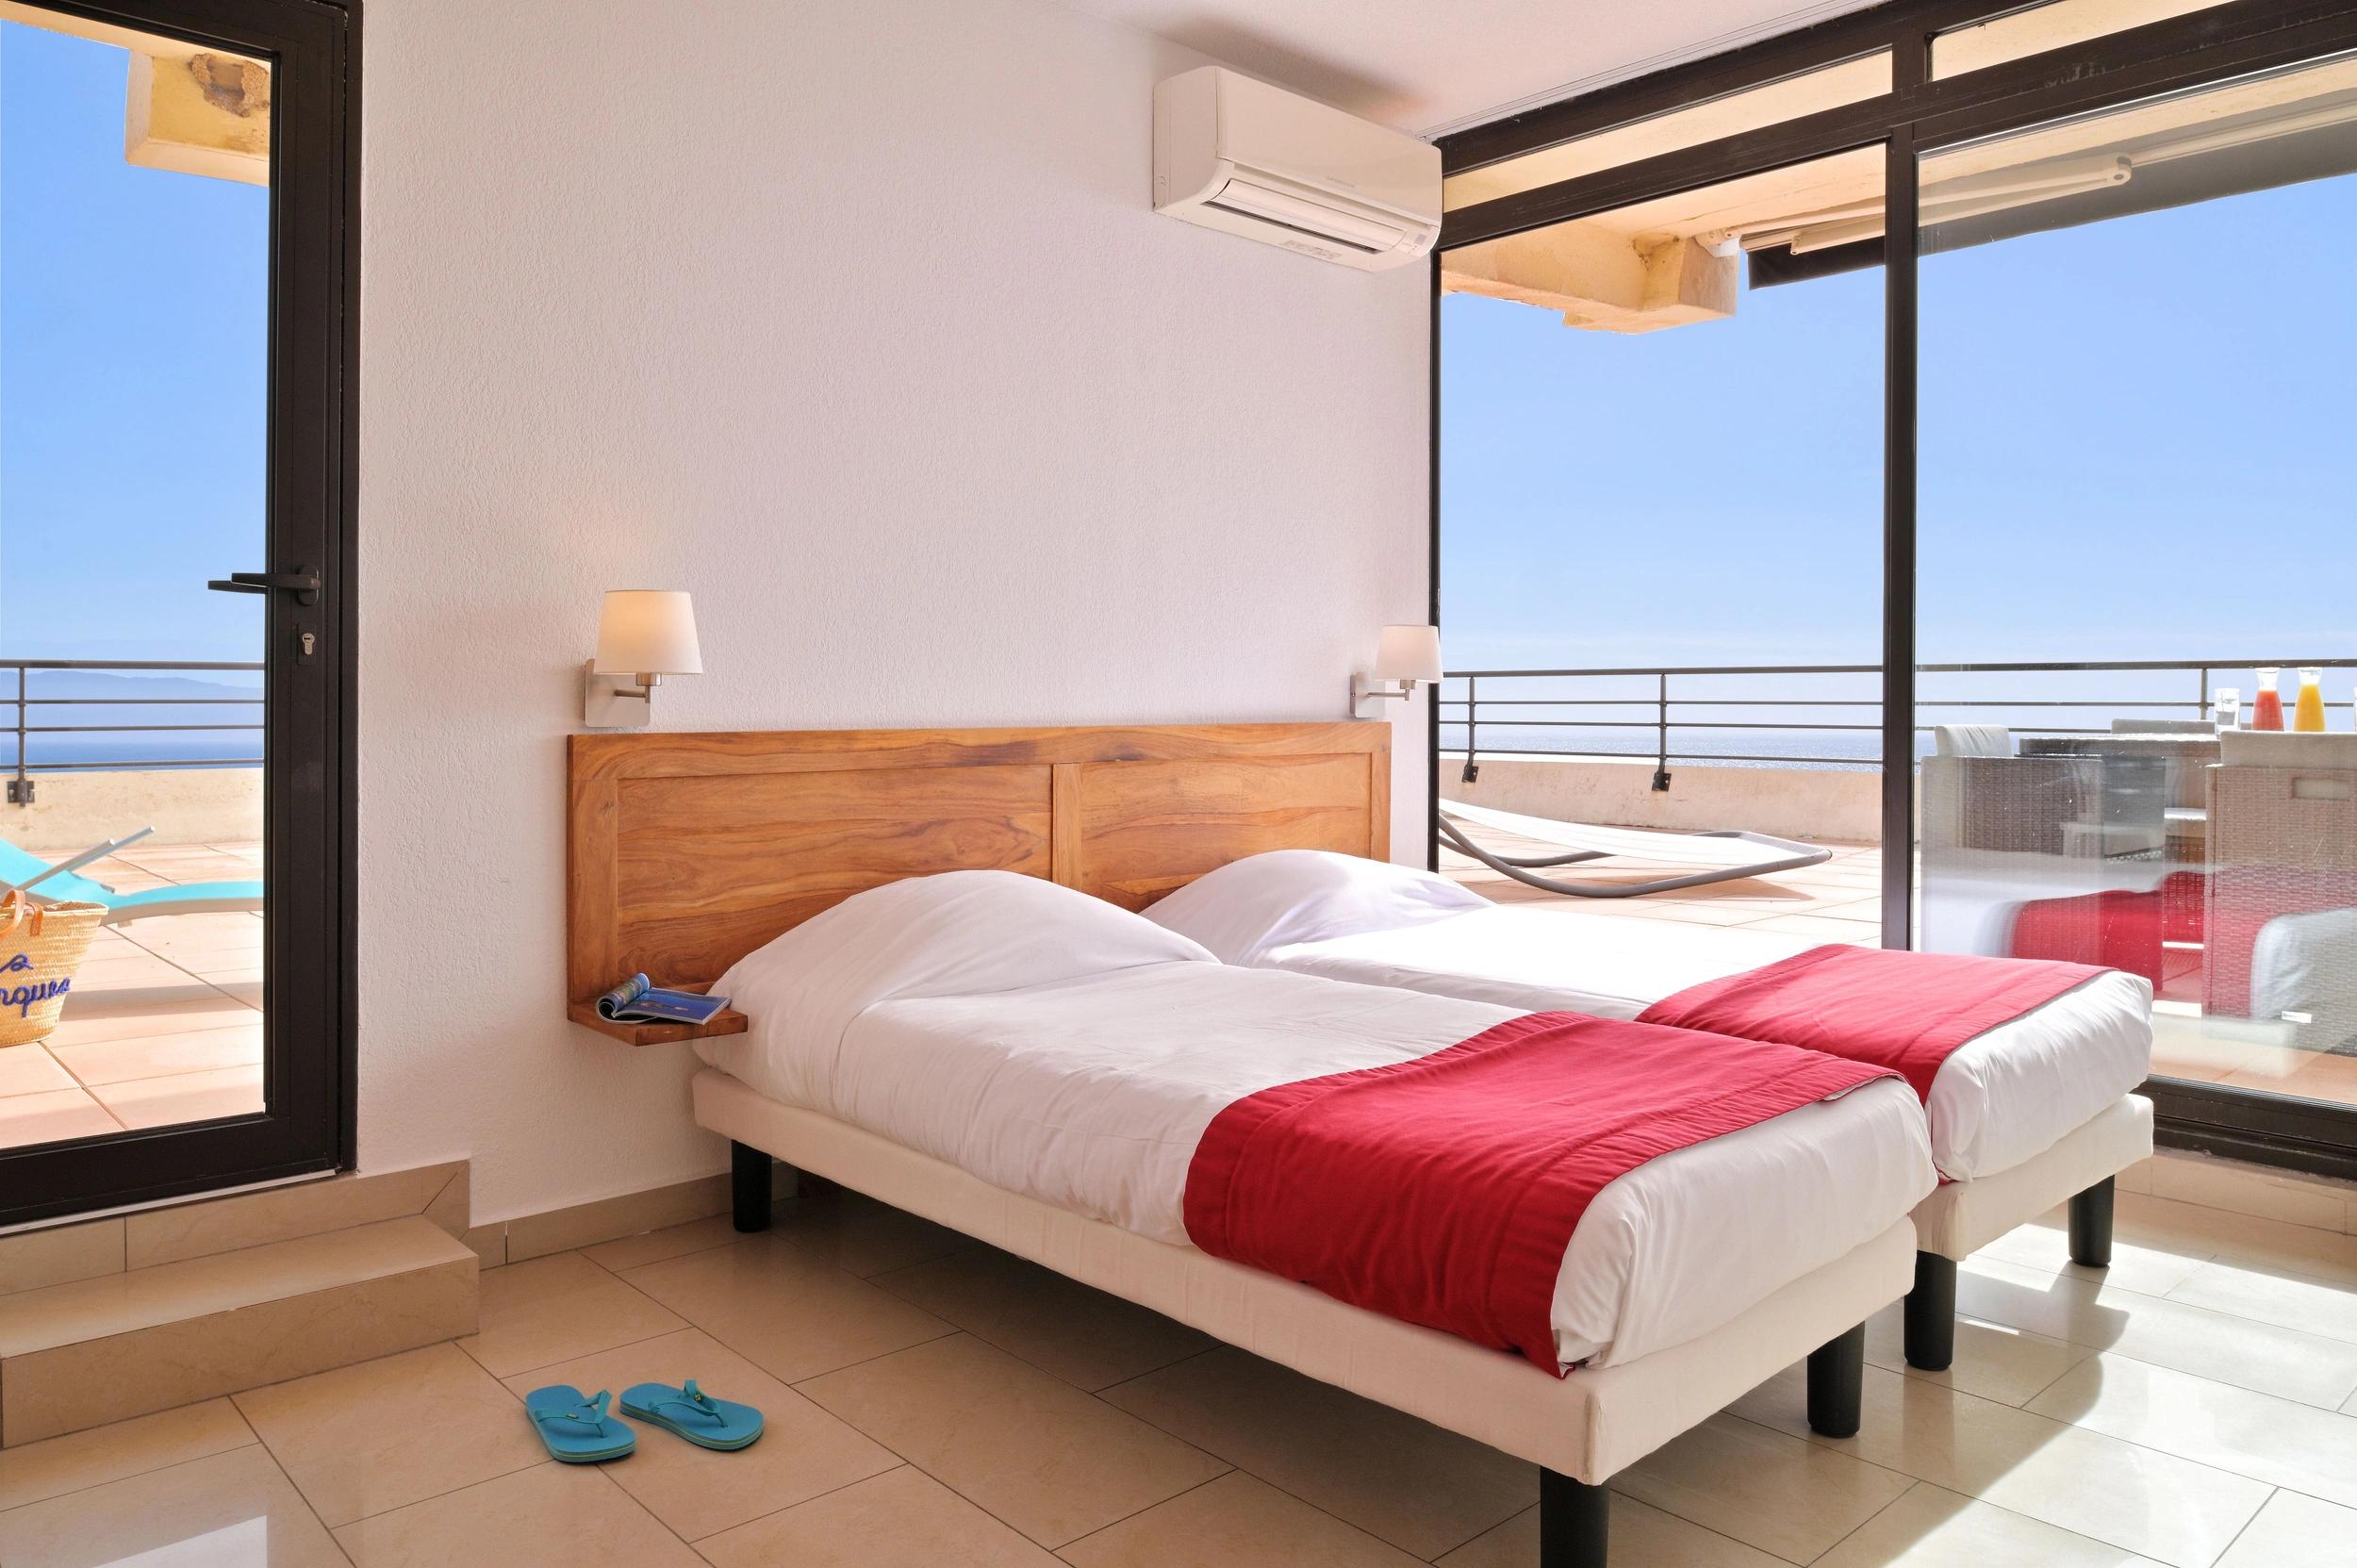 Appartement de vacances 3 chambres idéal pour famille à Ajaccio